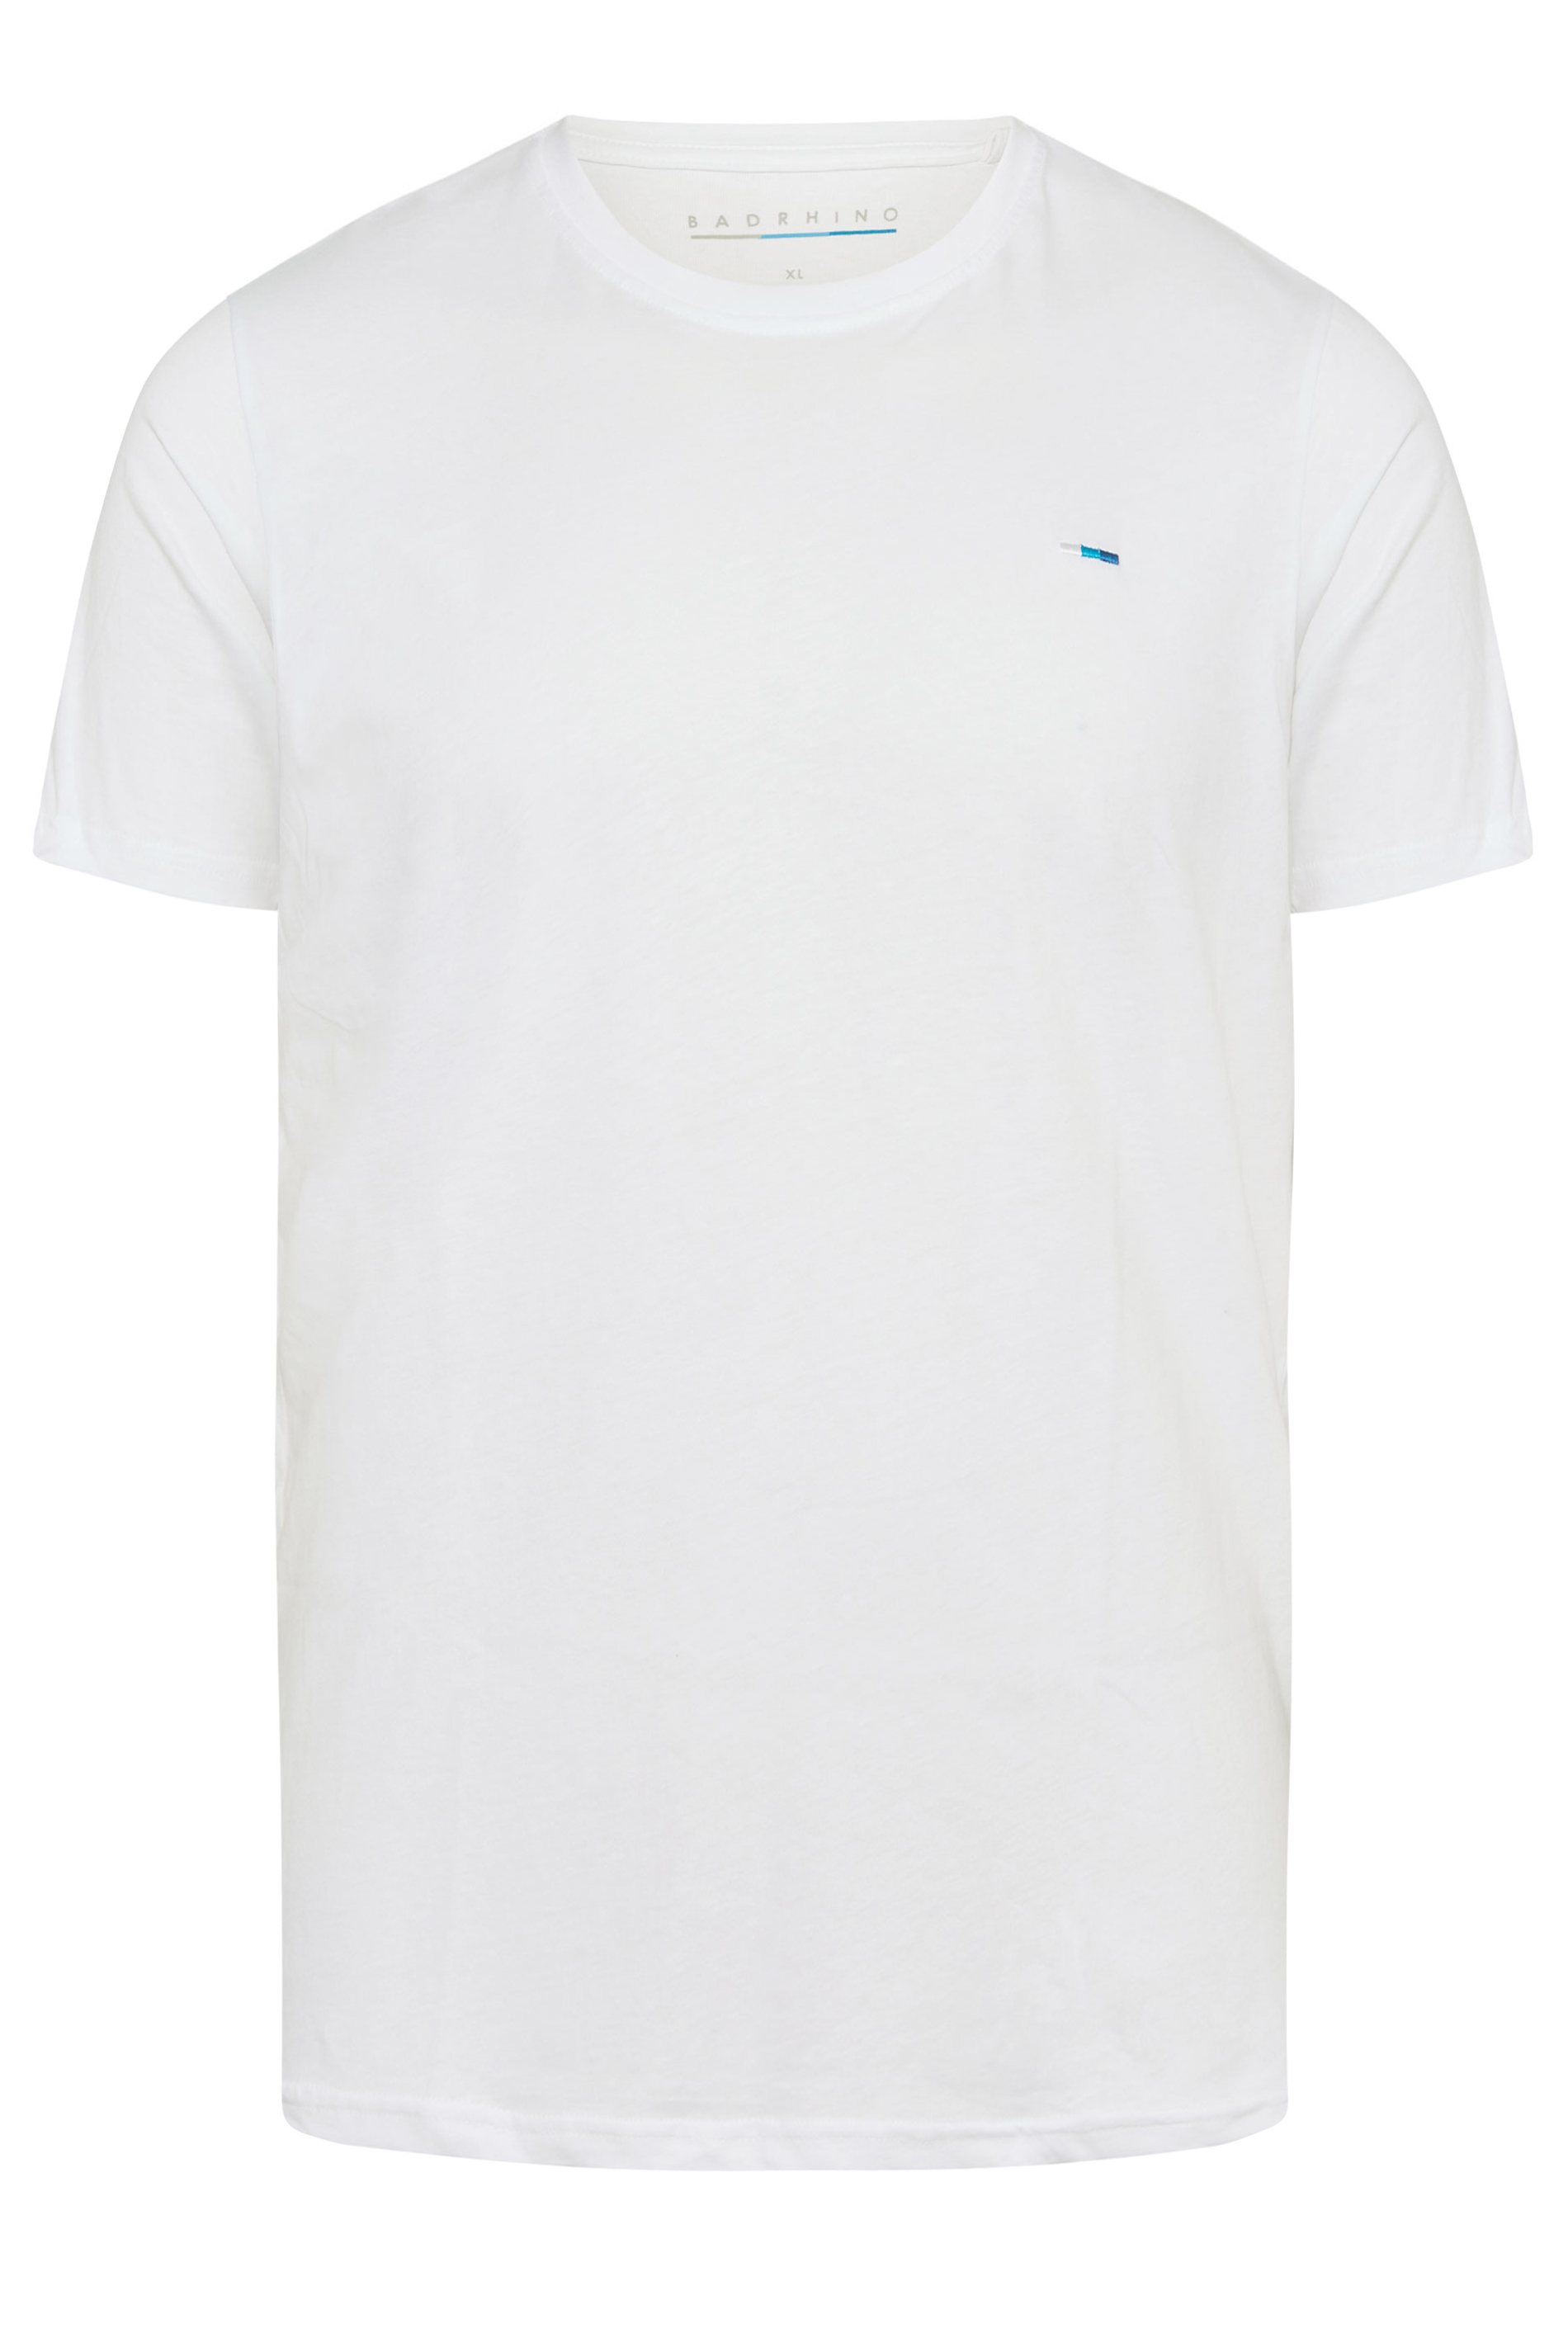 BadRhino White Core T-Shirt | BadRhino 3